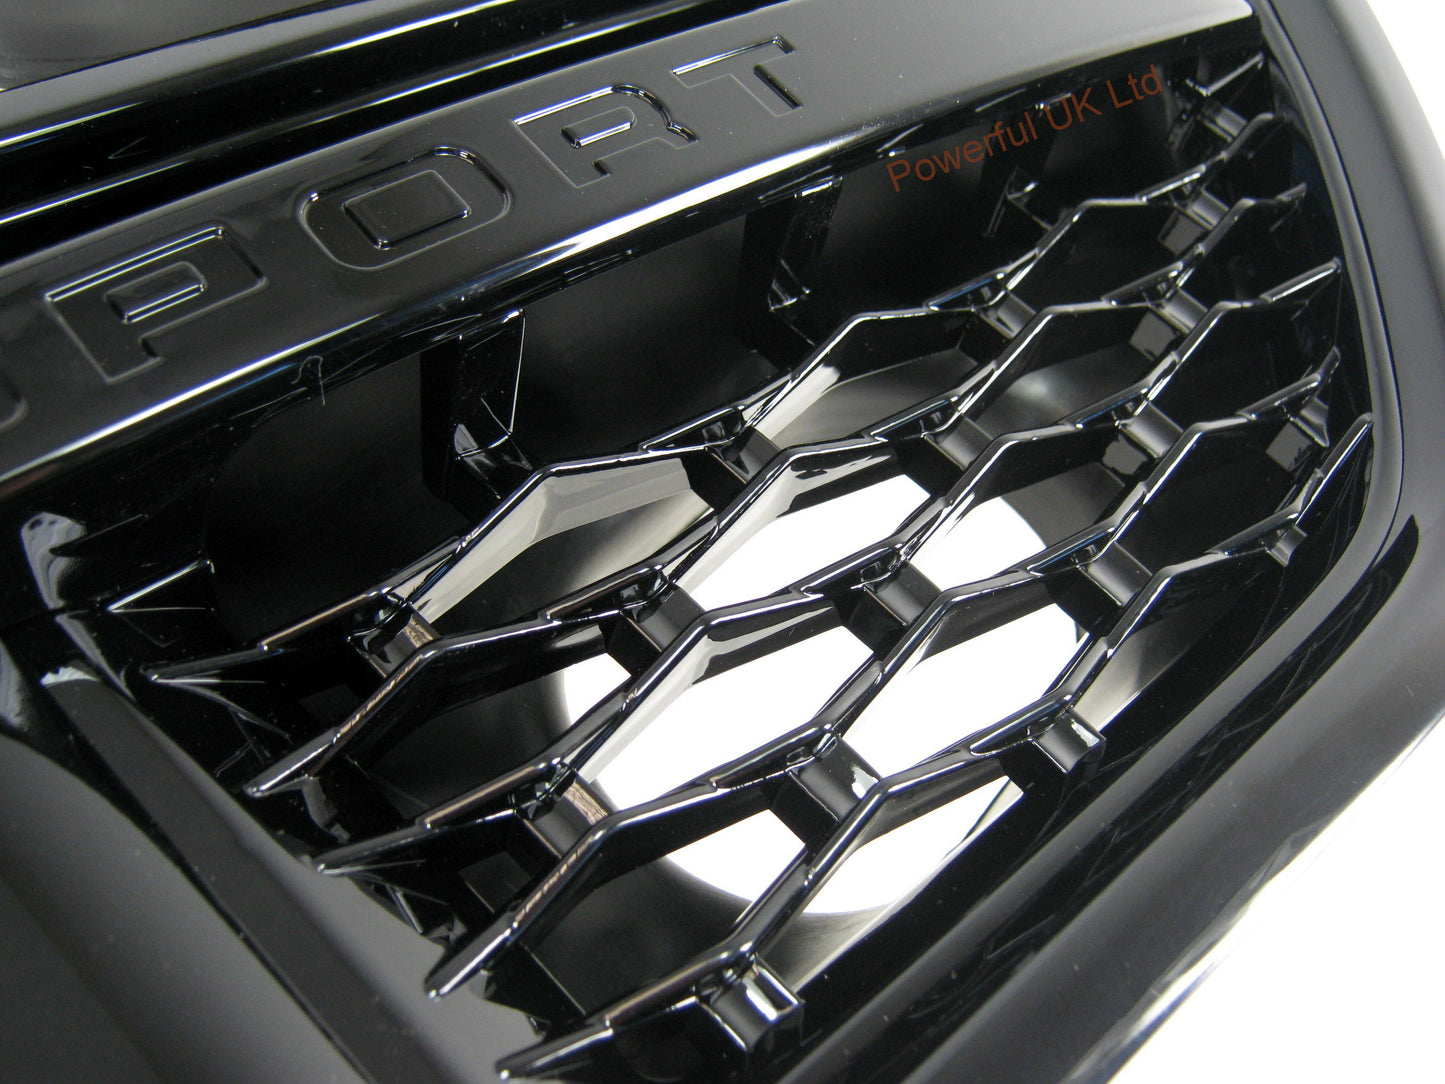 Side Vents - Black/Black/Black for Range Rover Sport 2010